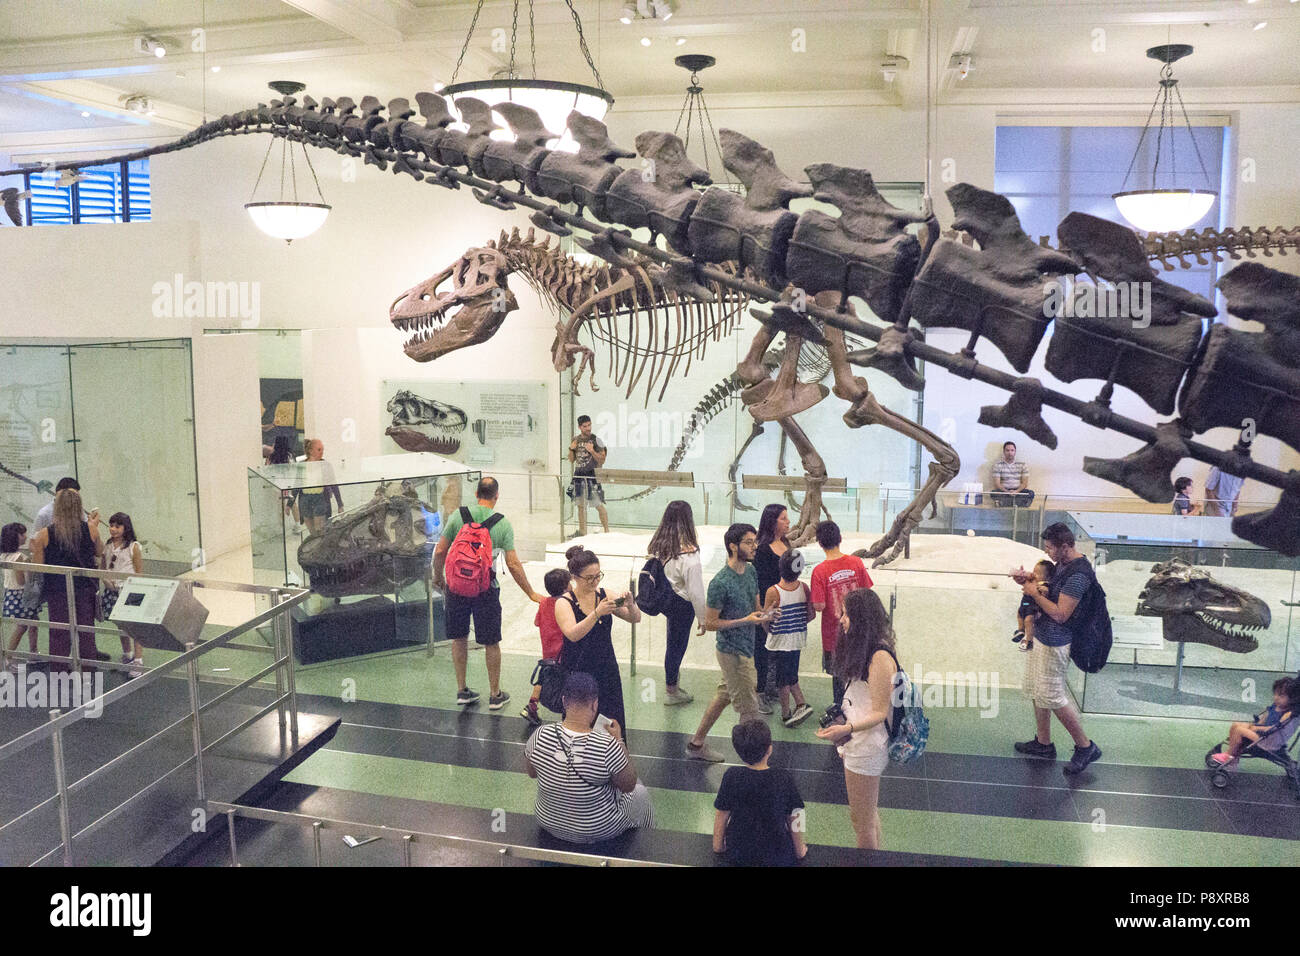 2 enormes dinosaurios Apatosaurus cola en primer plano con vistas a diversos admiradores de todas las edades caminando el centro de la pasarela y visualización del esqueleto rex Tyrranosaurus más allá Foto de stock